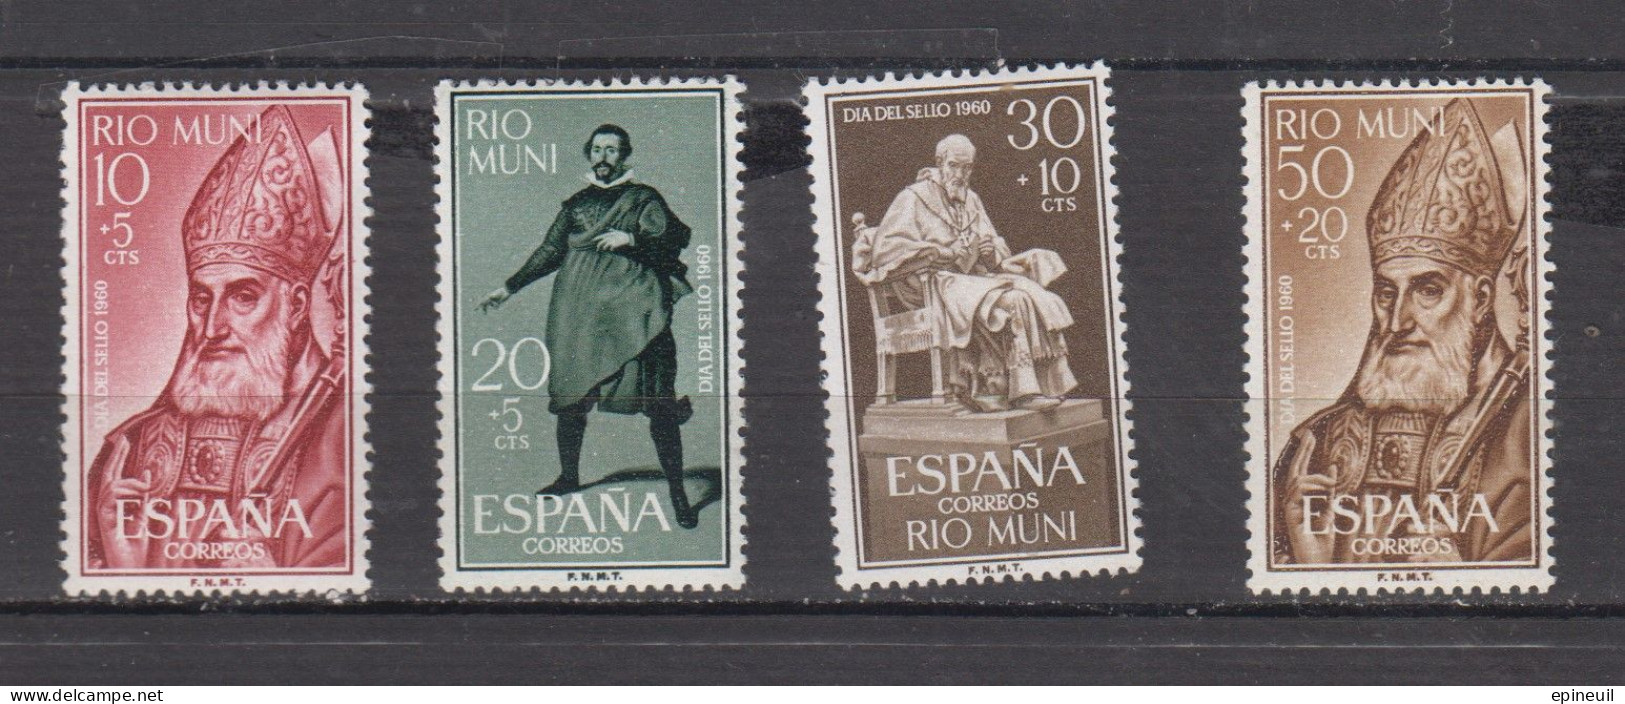 RIO MUNI * 1960 YT N° 14 15 16 17 - Rio Muni